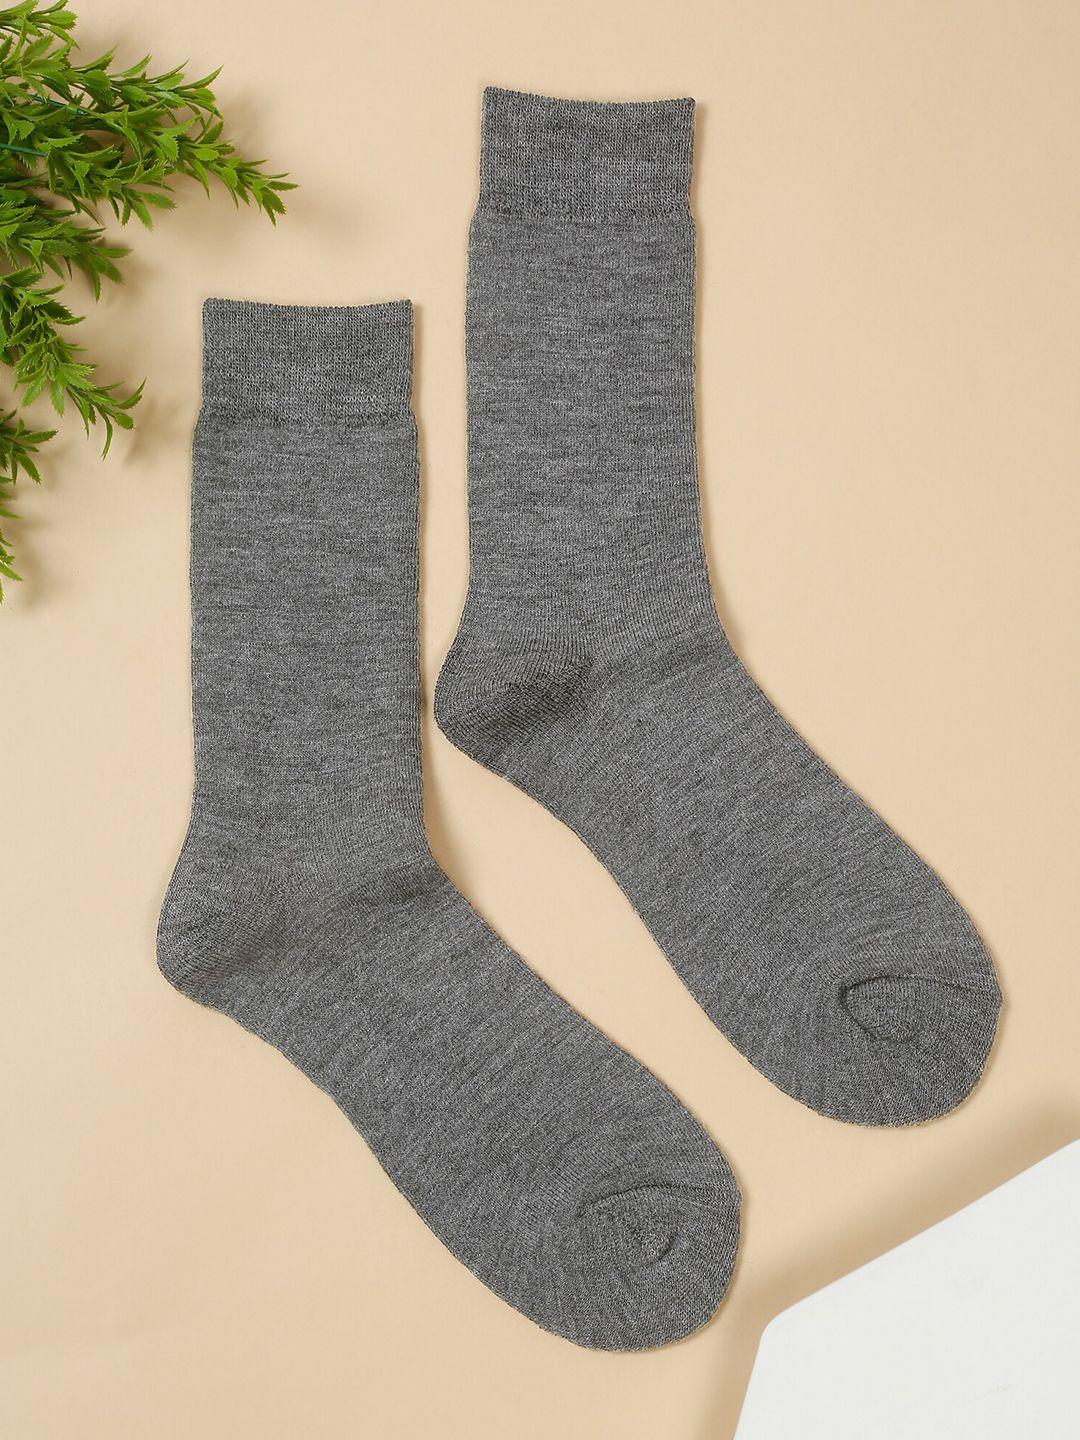 cantabil-men-pack-of-3-acrylic-calf-length-socks